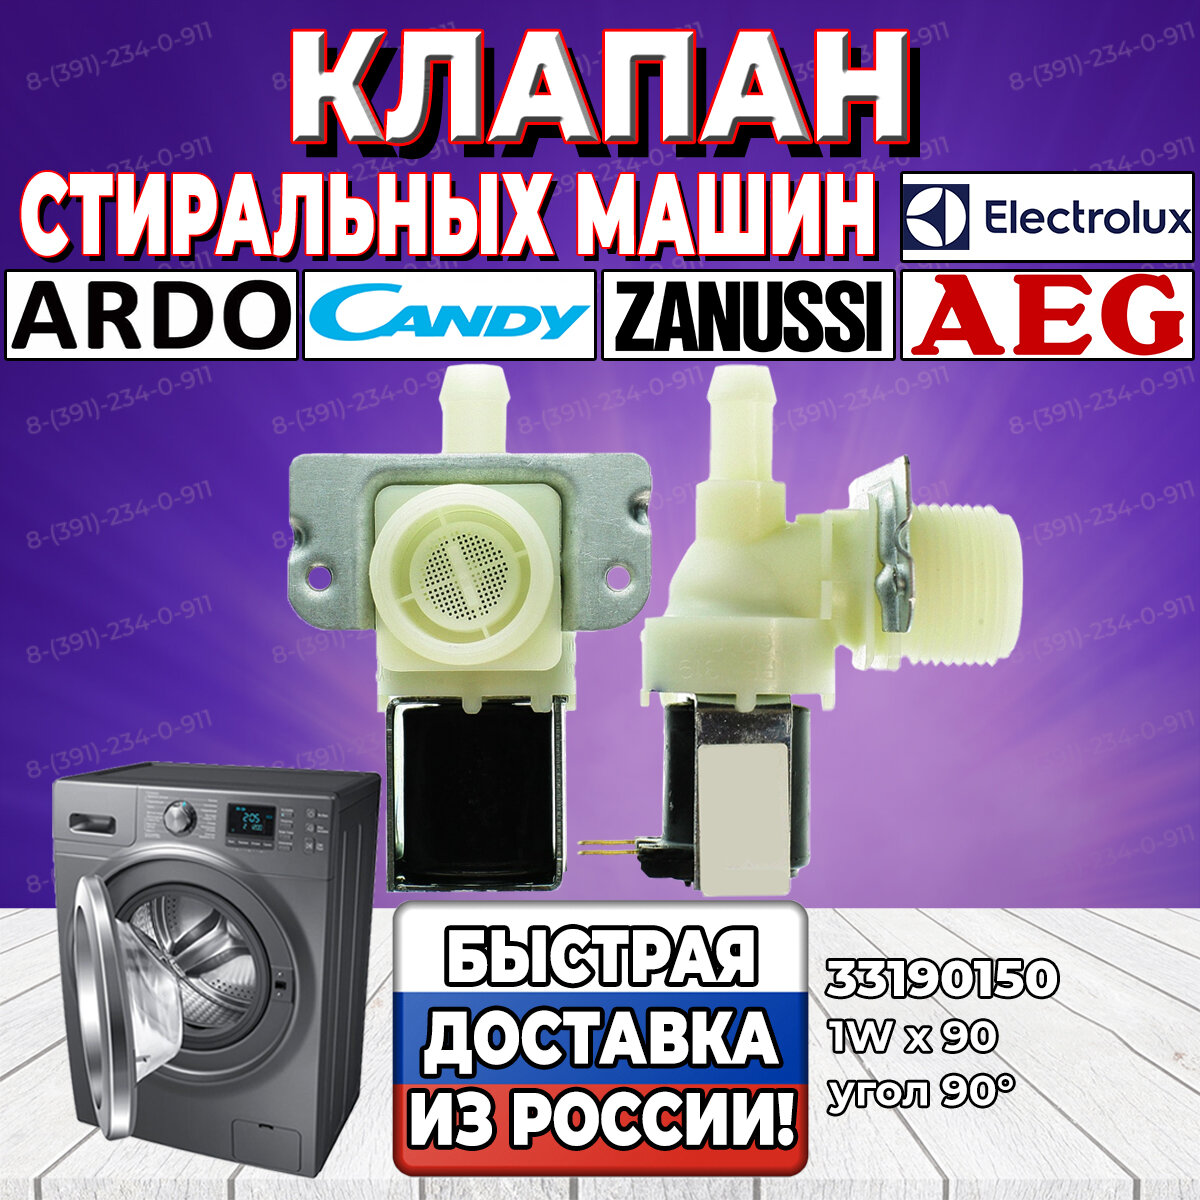 Заливной клапан стиральной машины AEG Ardo Candy Electrolux Zanussi (АЕГ Ардо Канди Электролюкс Занусси) 1Wх90 33190150